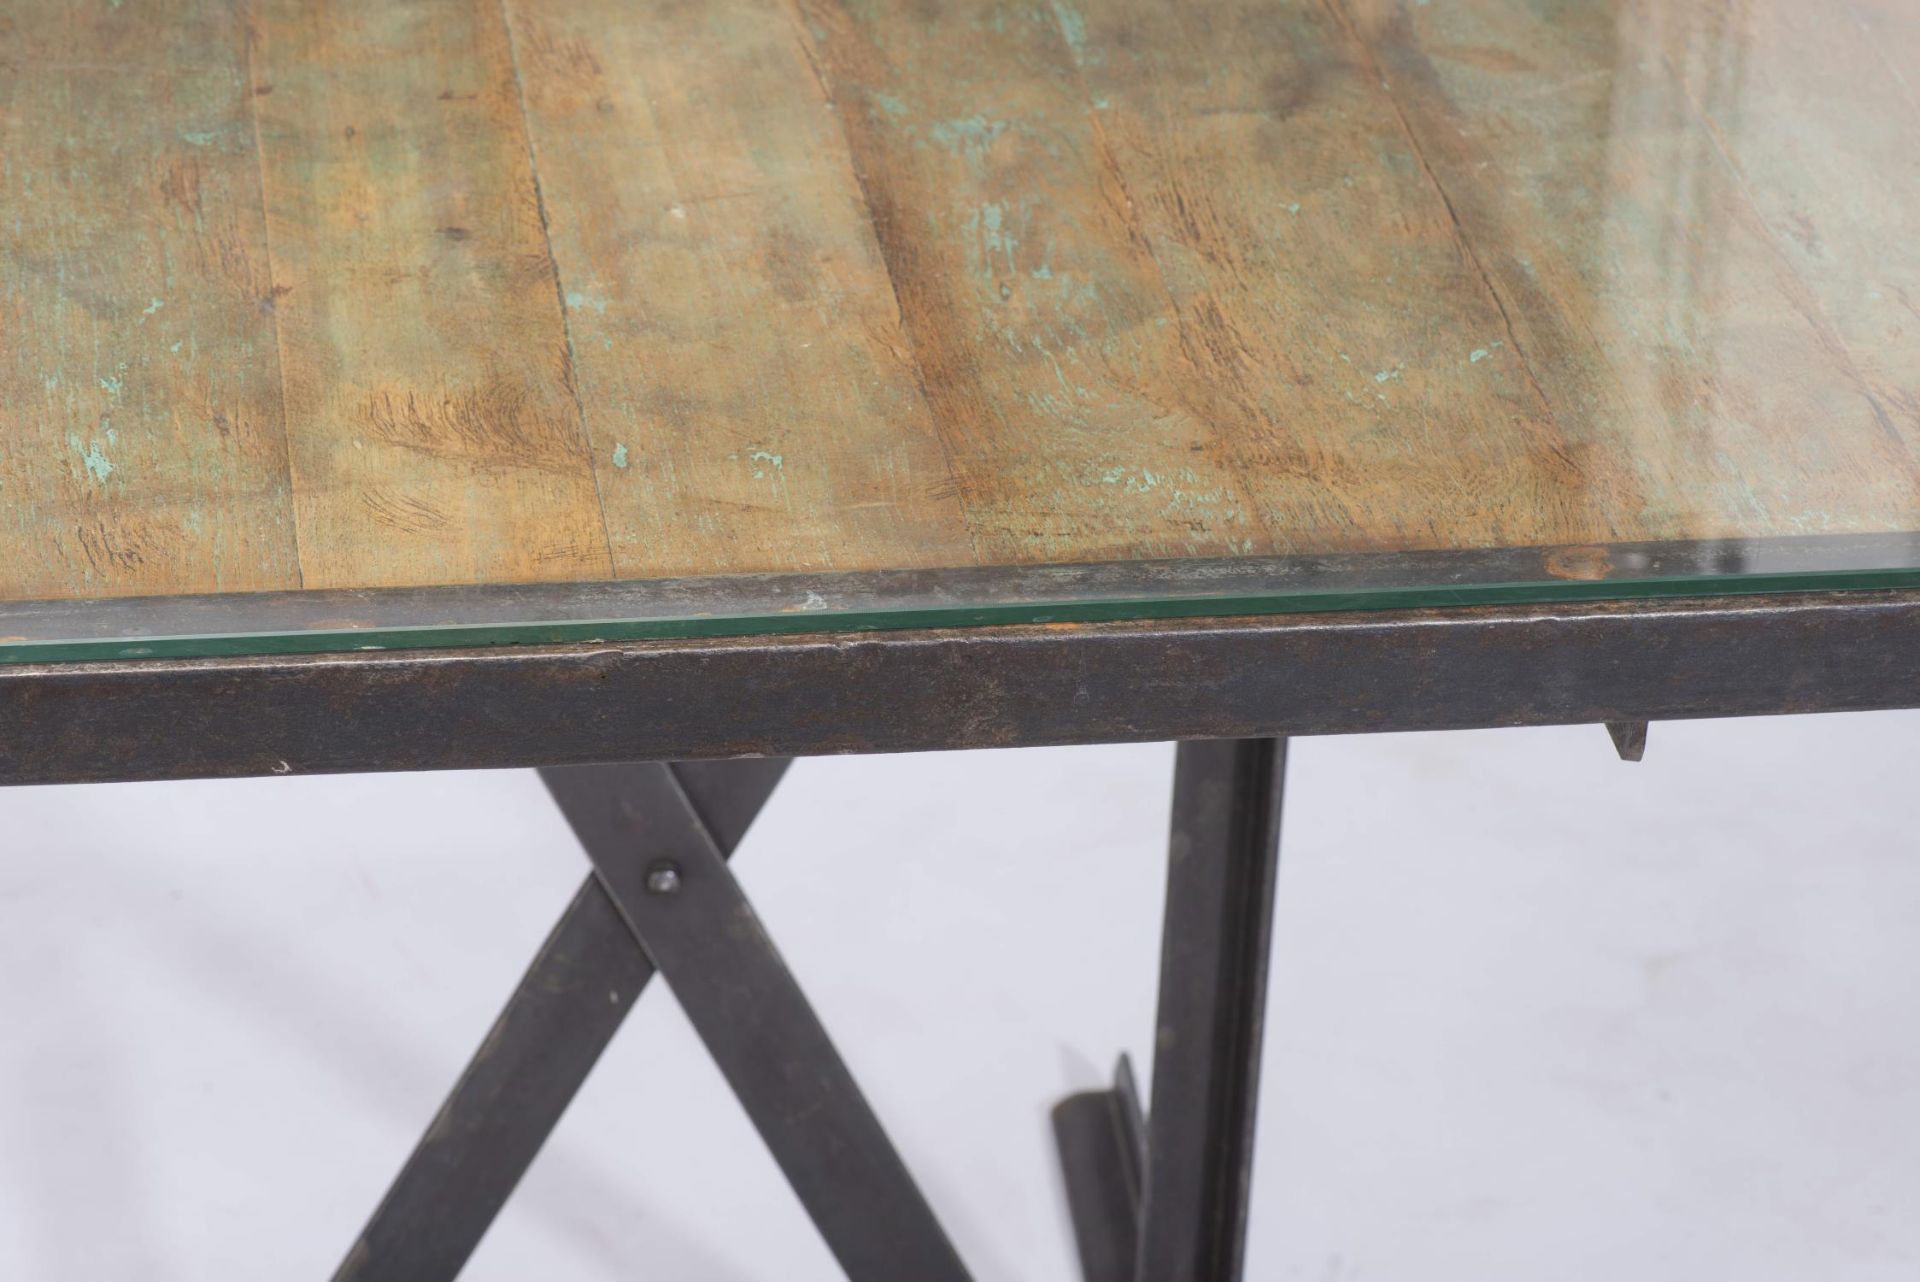 Table de style industriel - Table de style industriel, piètement en métal noir, [...] - Bild 2 aus 6